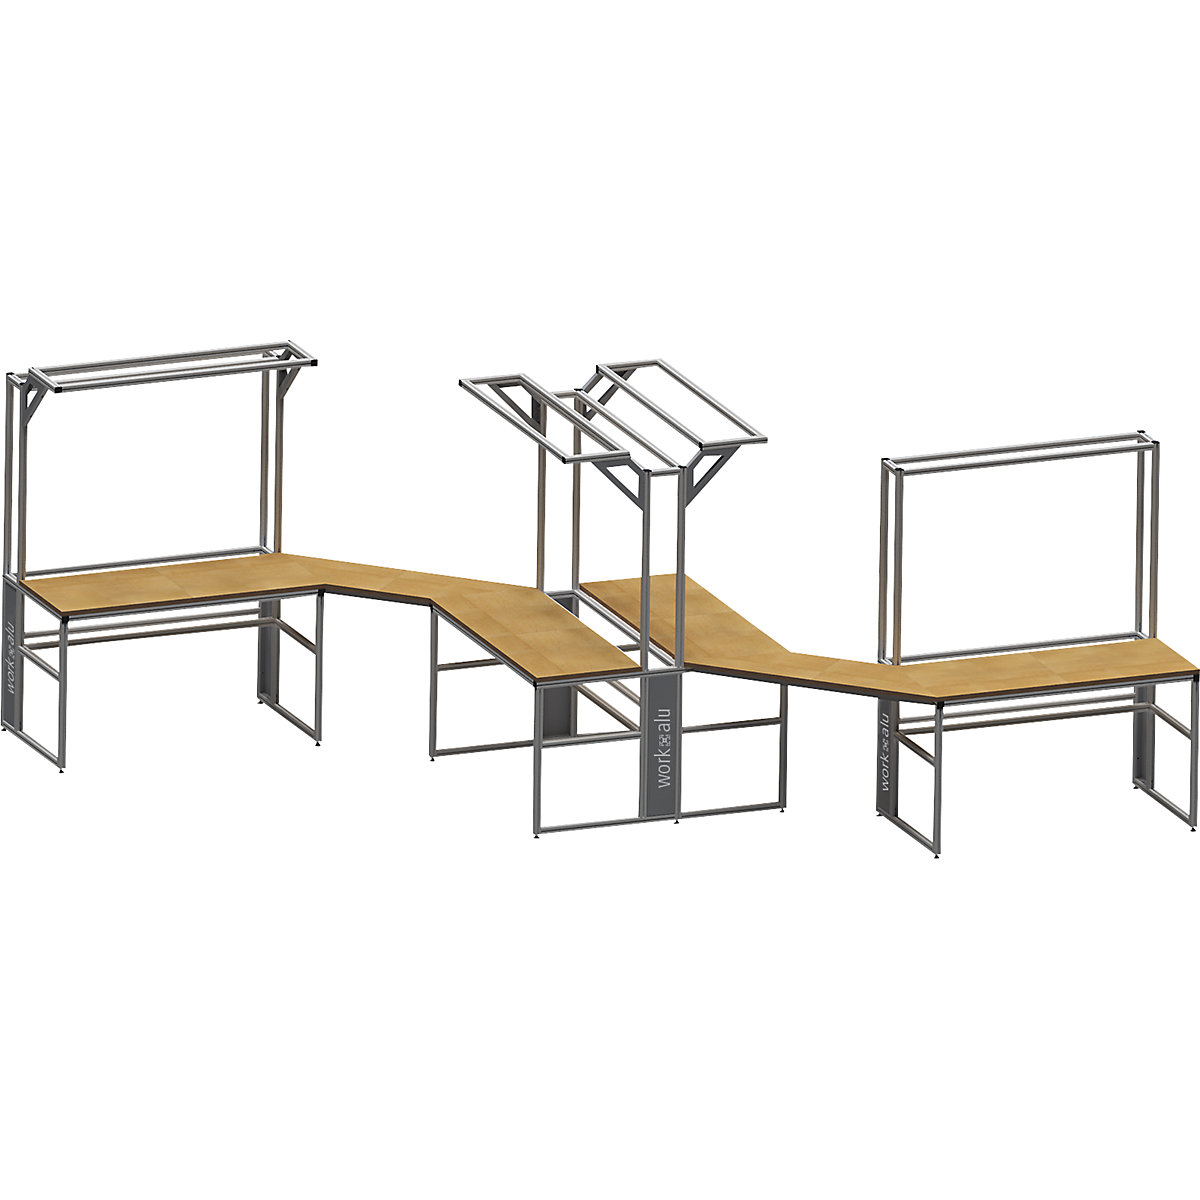 Stół warsztatowy aluminiowy workalu® z modułem systemowym, jednostronny – bedrunka hirth (Zdjęcie produktu 2)-1